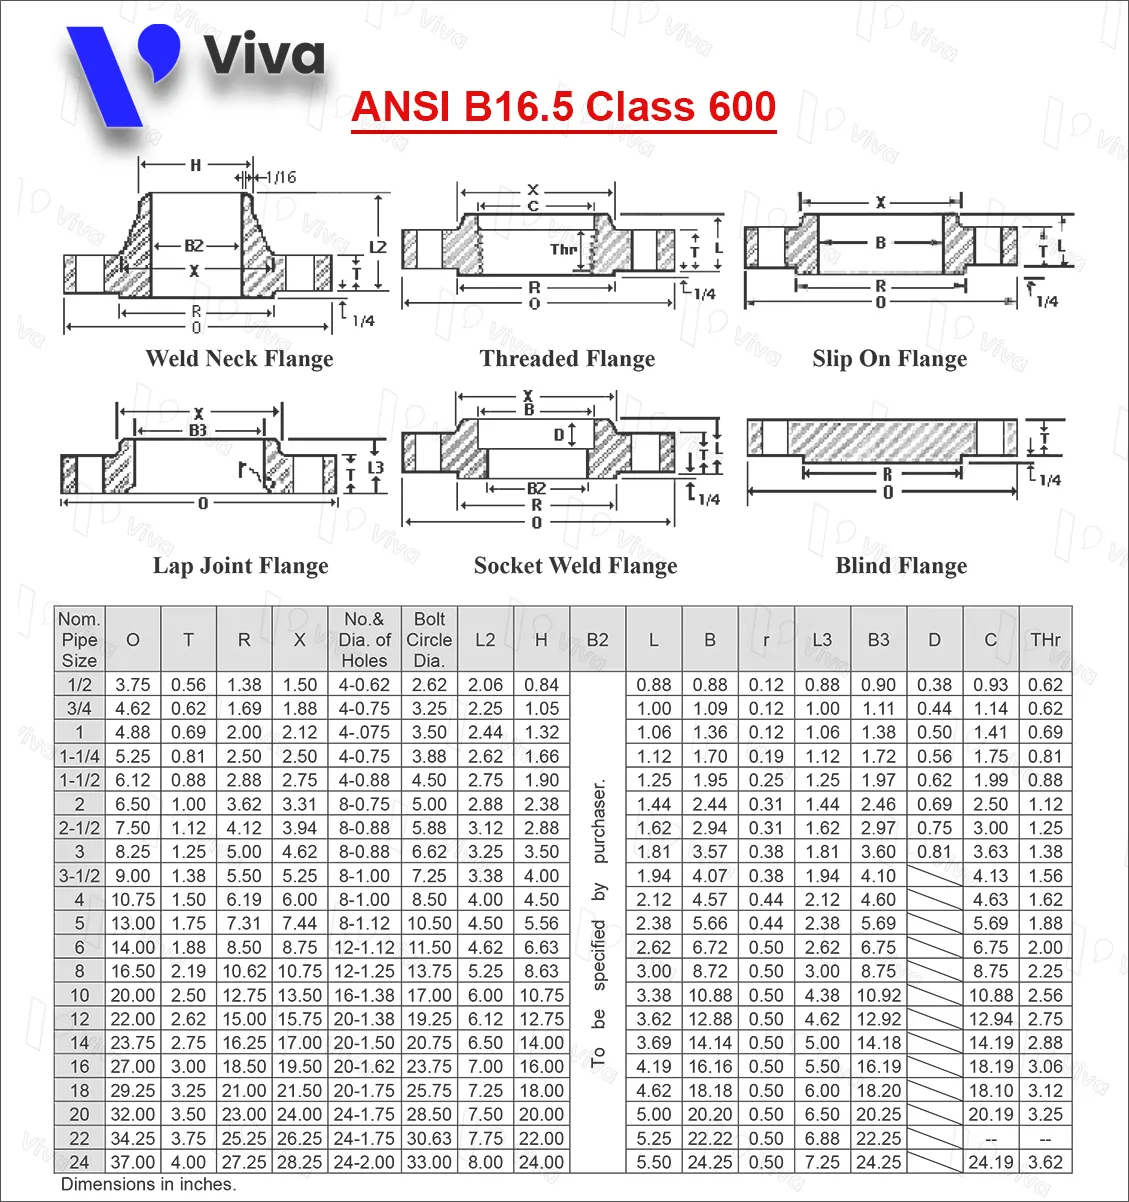 Bảng tra tiêu chuẩn mặt bích ANSI B16.5 Class 600